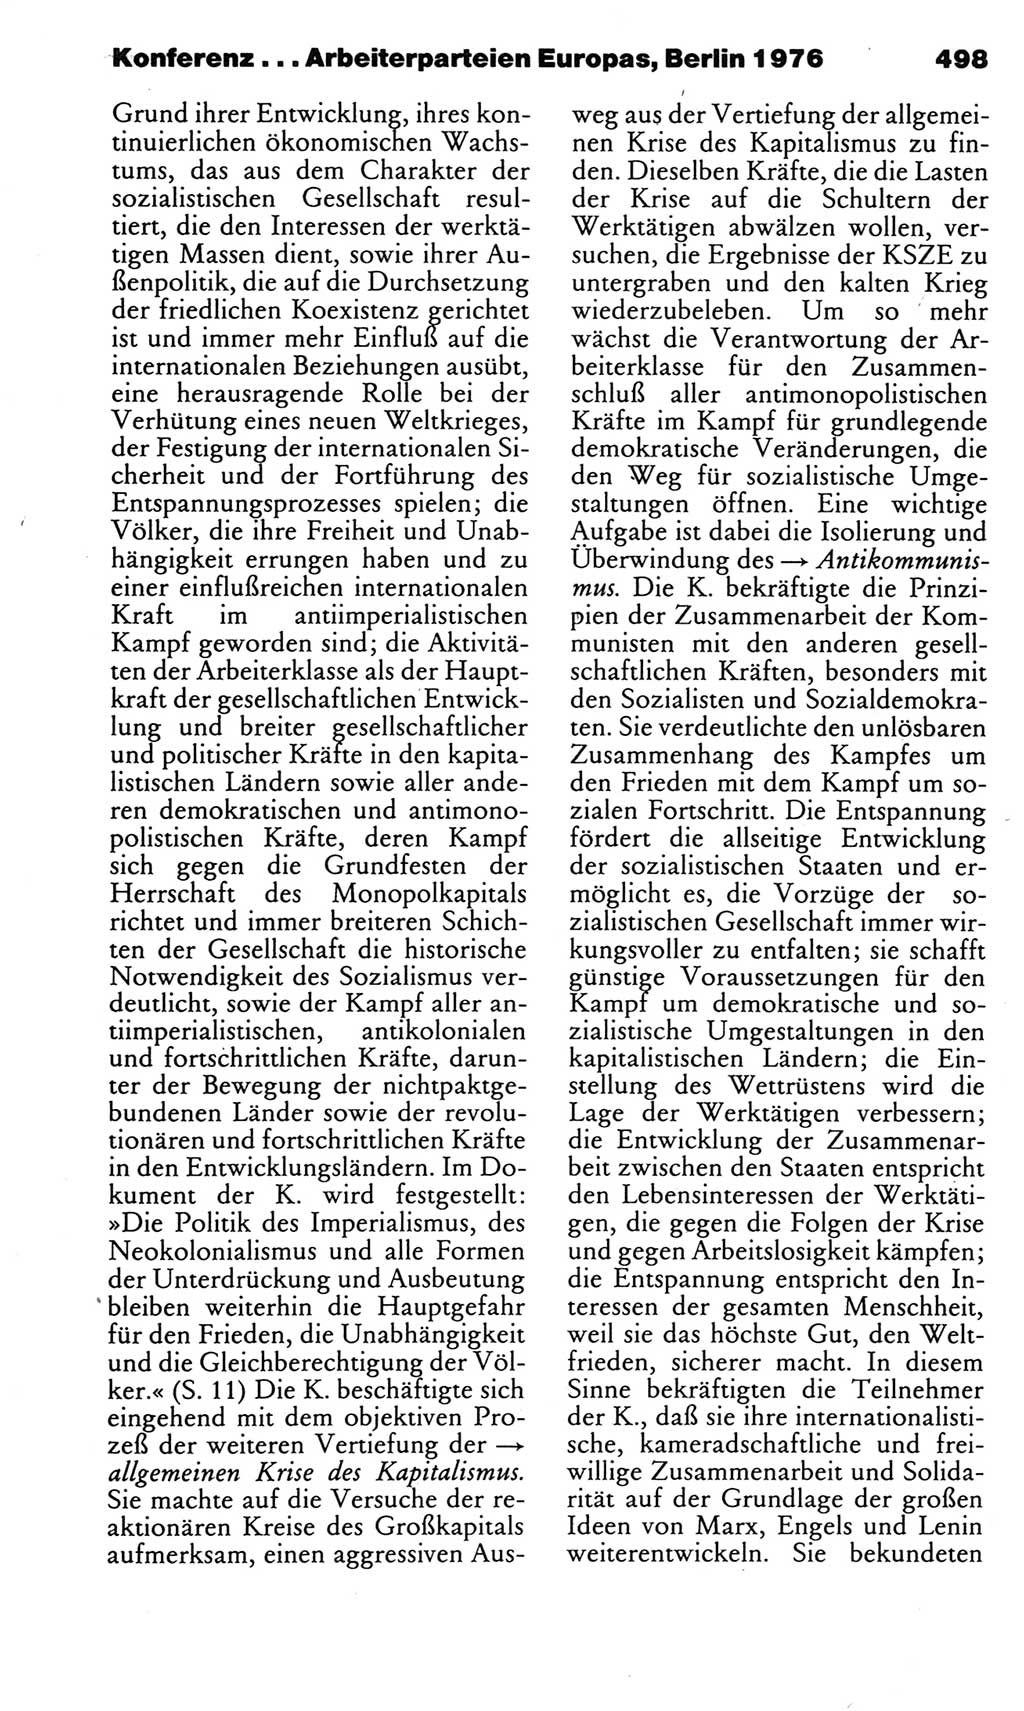 Kleines politisches Wörterbuch [Deutsche Demokratische Republik (DDR)] 1983, Seite 498 (Kl. pol. Wb. DDR 1983, S. 498)